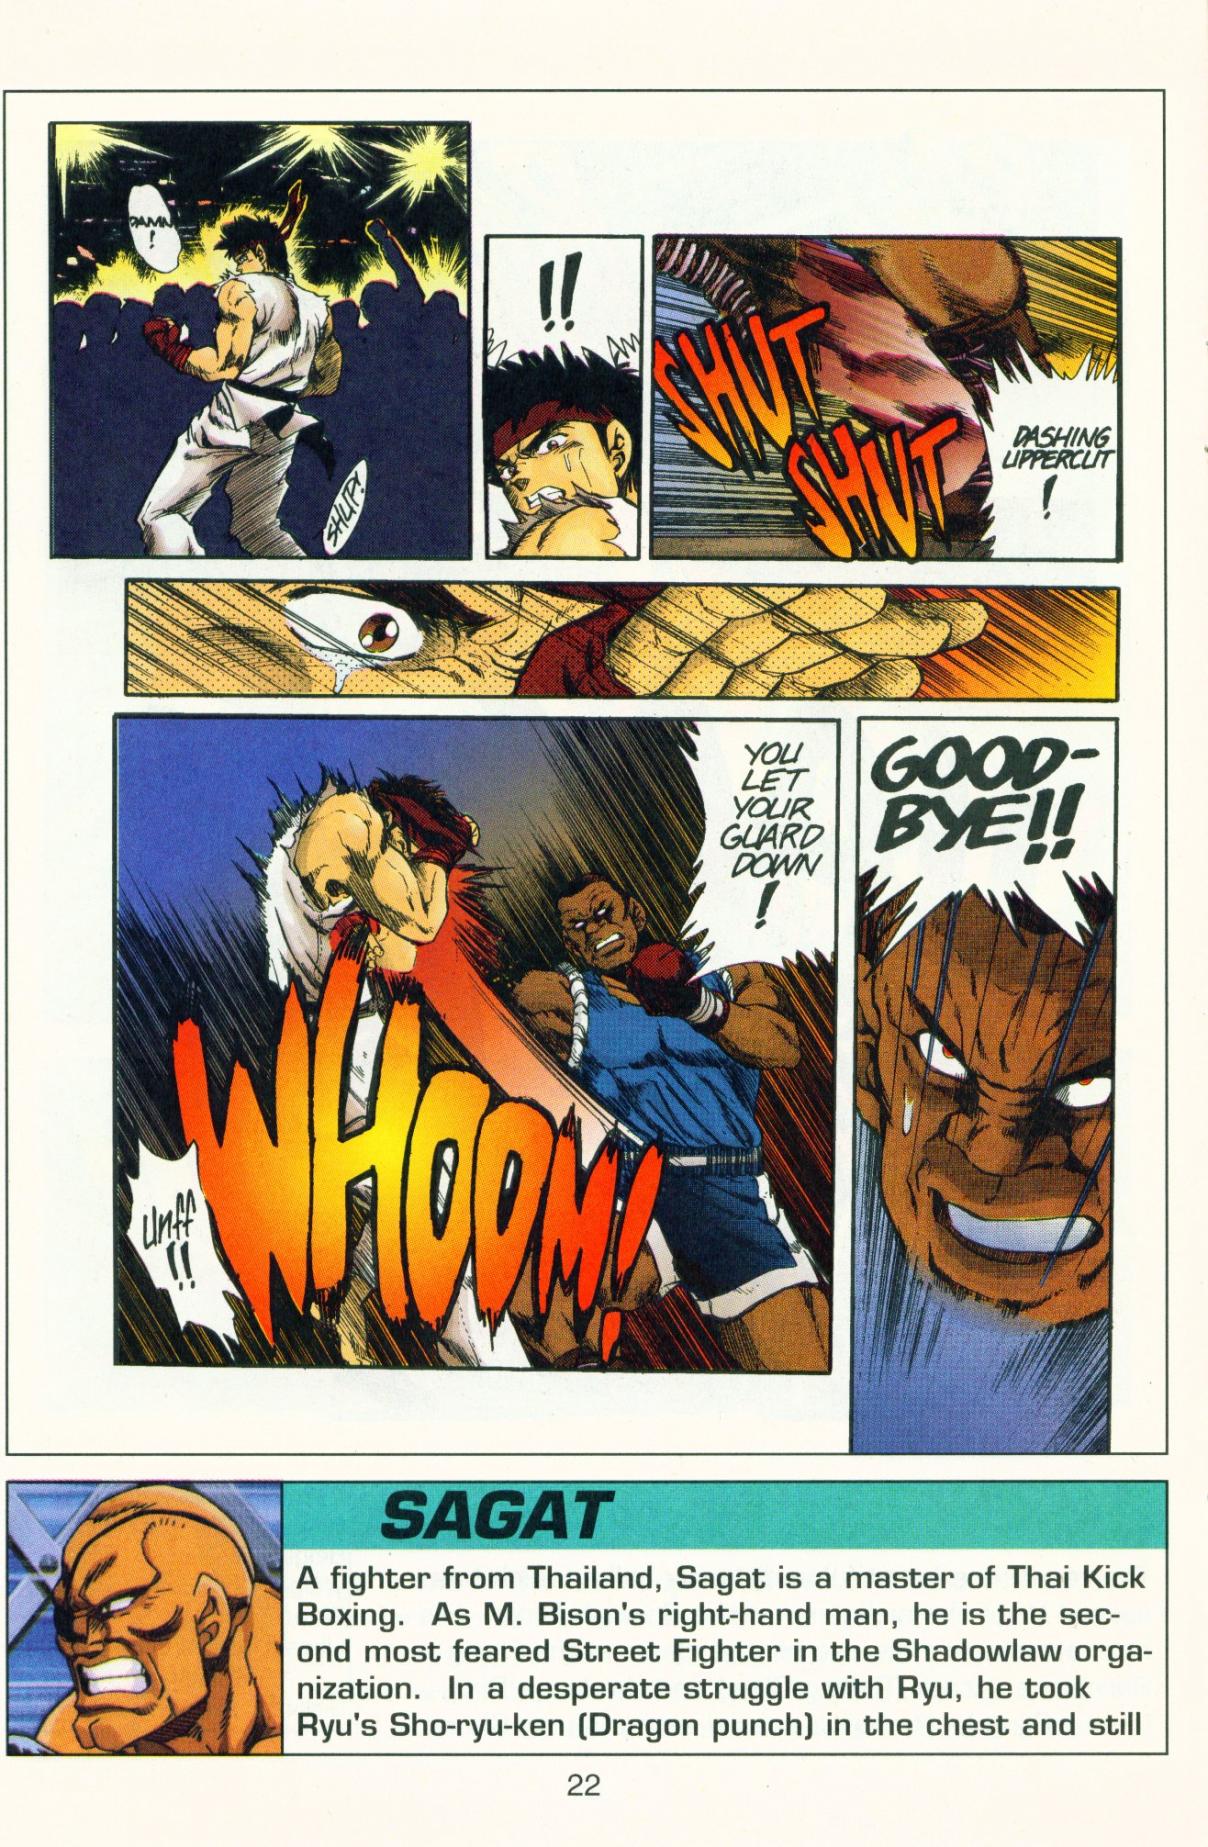 Street Fighter II Vol. 1 Ch. 2 Little Last Vegas [COLORED]